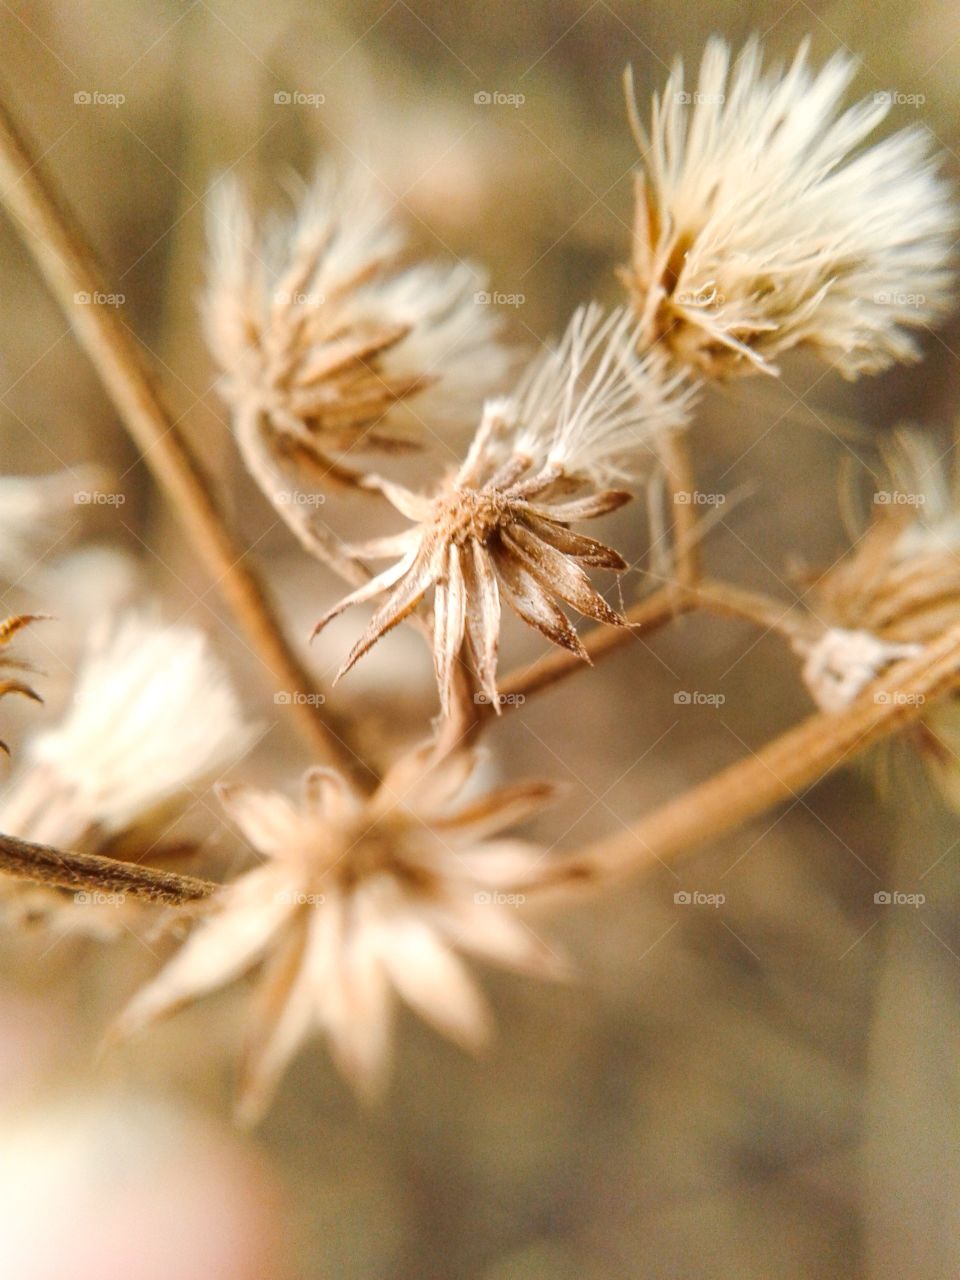 dry ironweed flower. macro